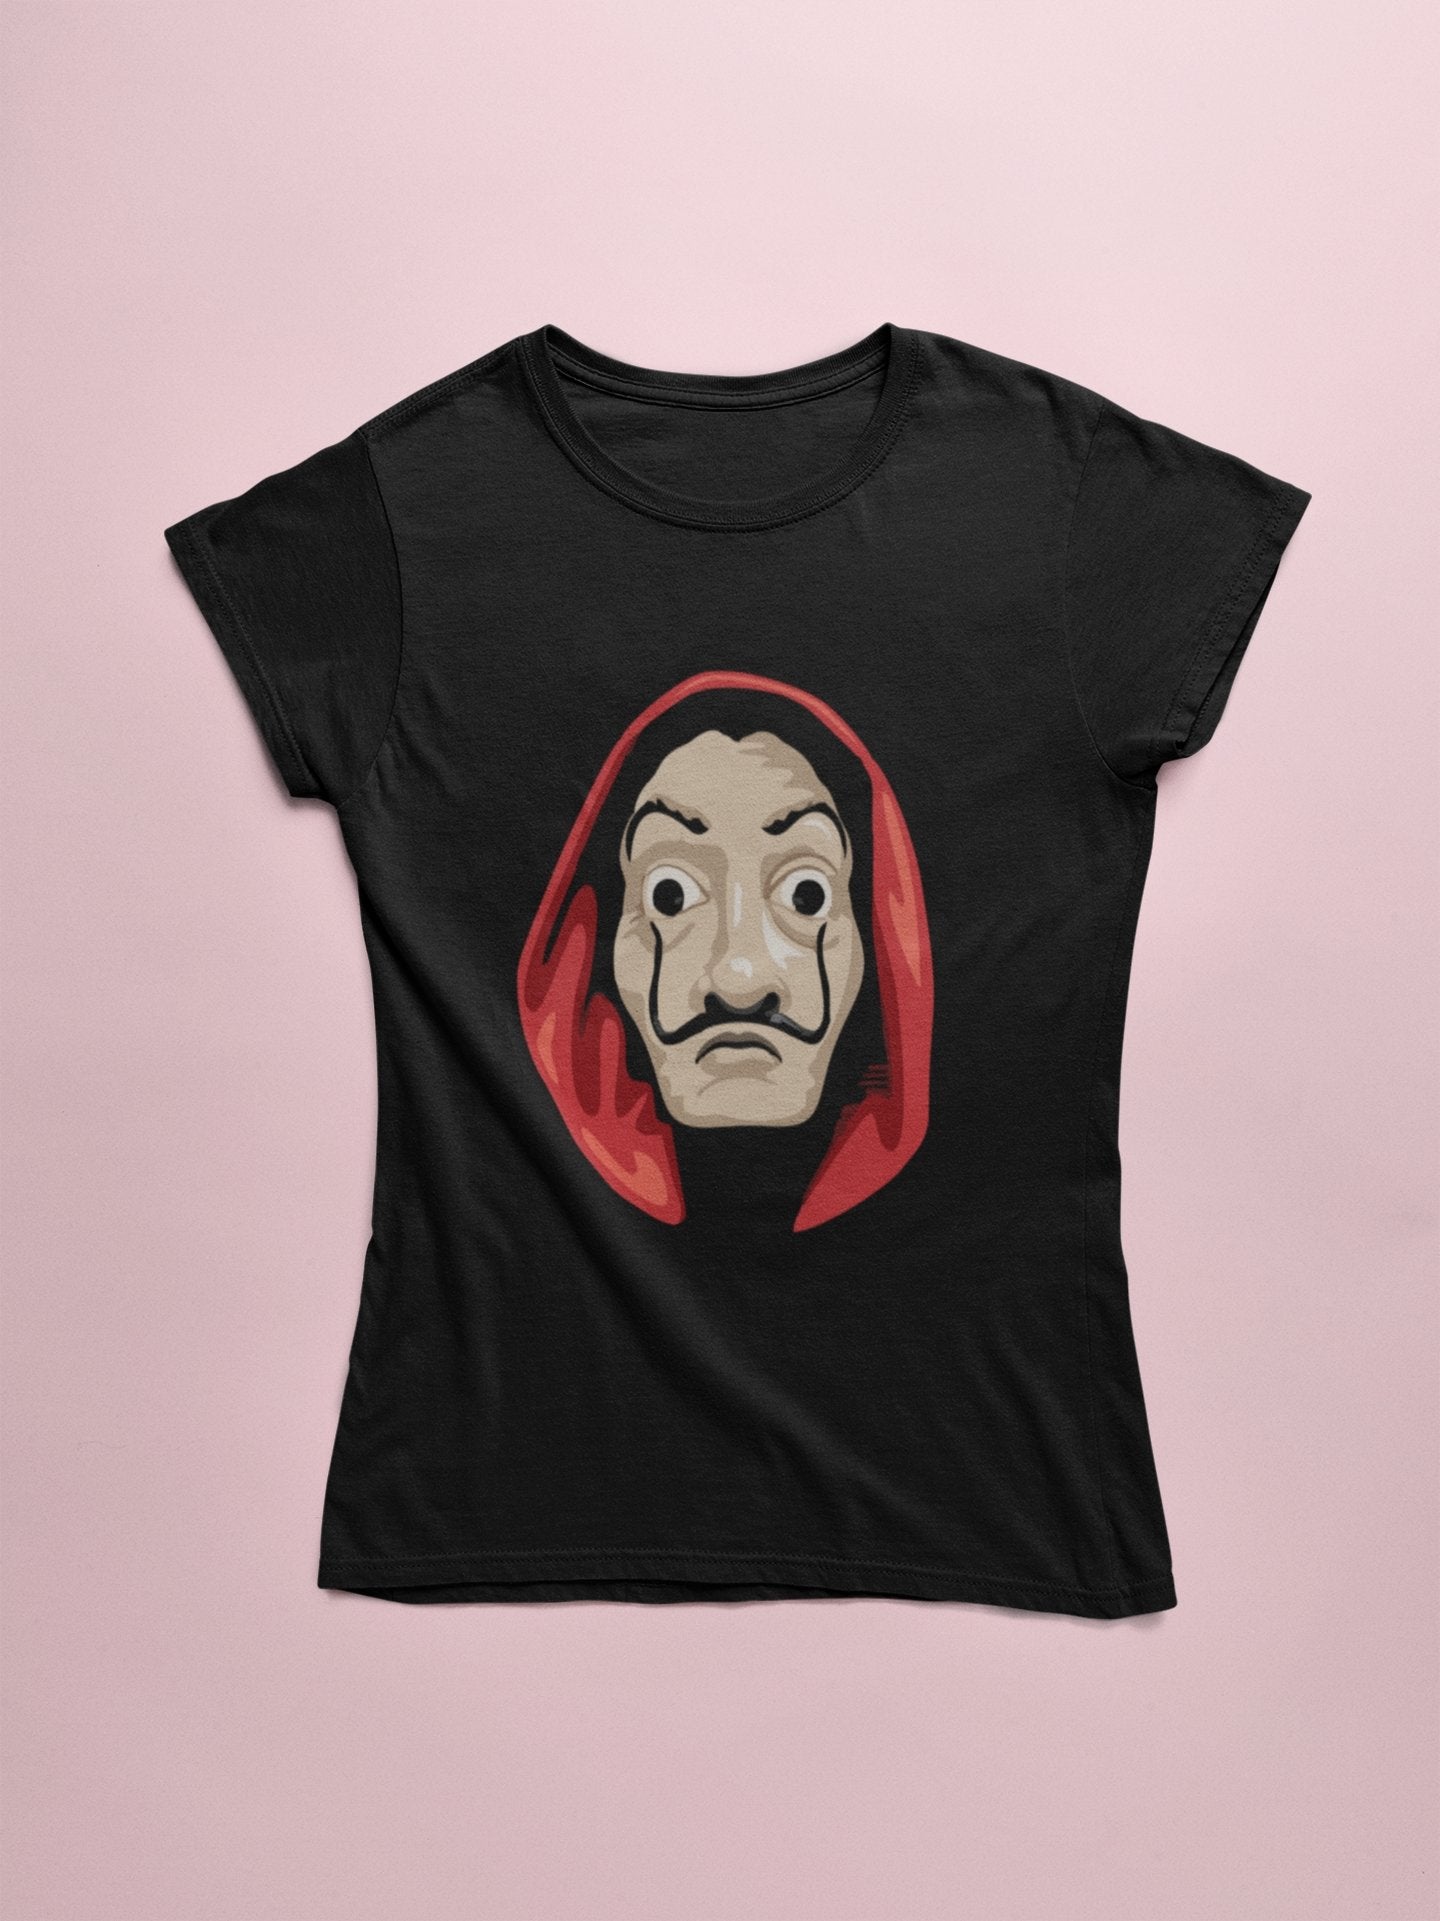 La Casa De Papel Mask Graphic T Shirt for Women - Insane Tees